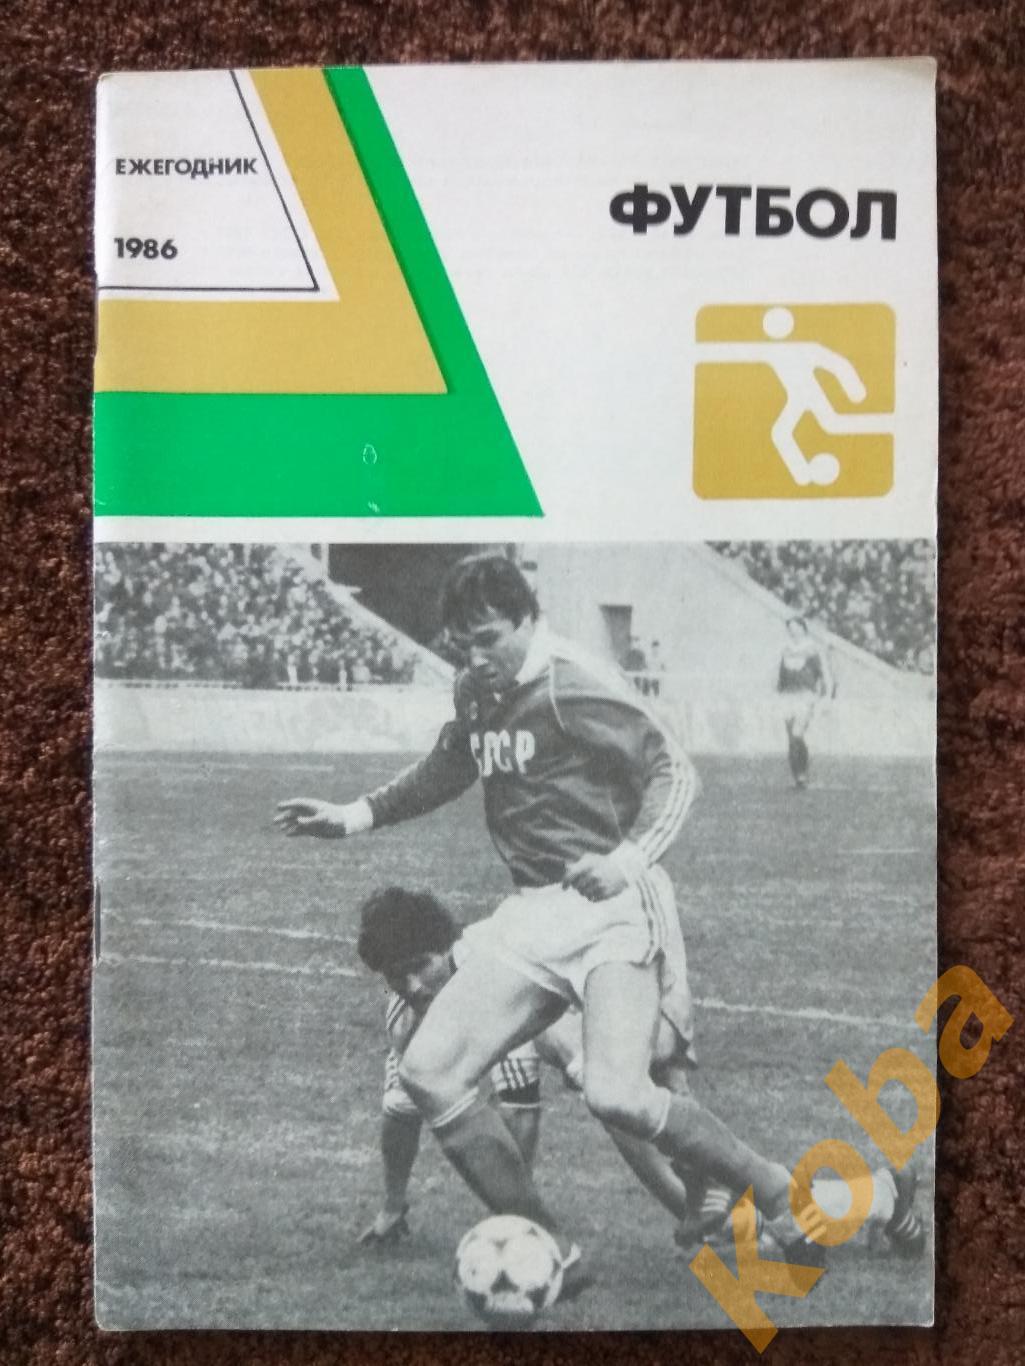 Футбол 1986 Ежегодник Симонян Годик Андреев ВШТ Варюшин